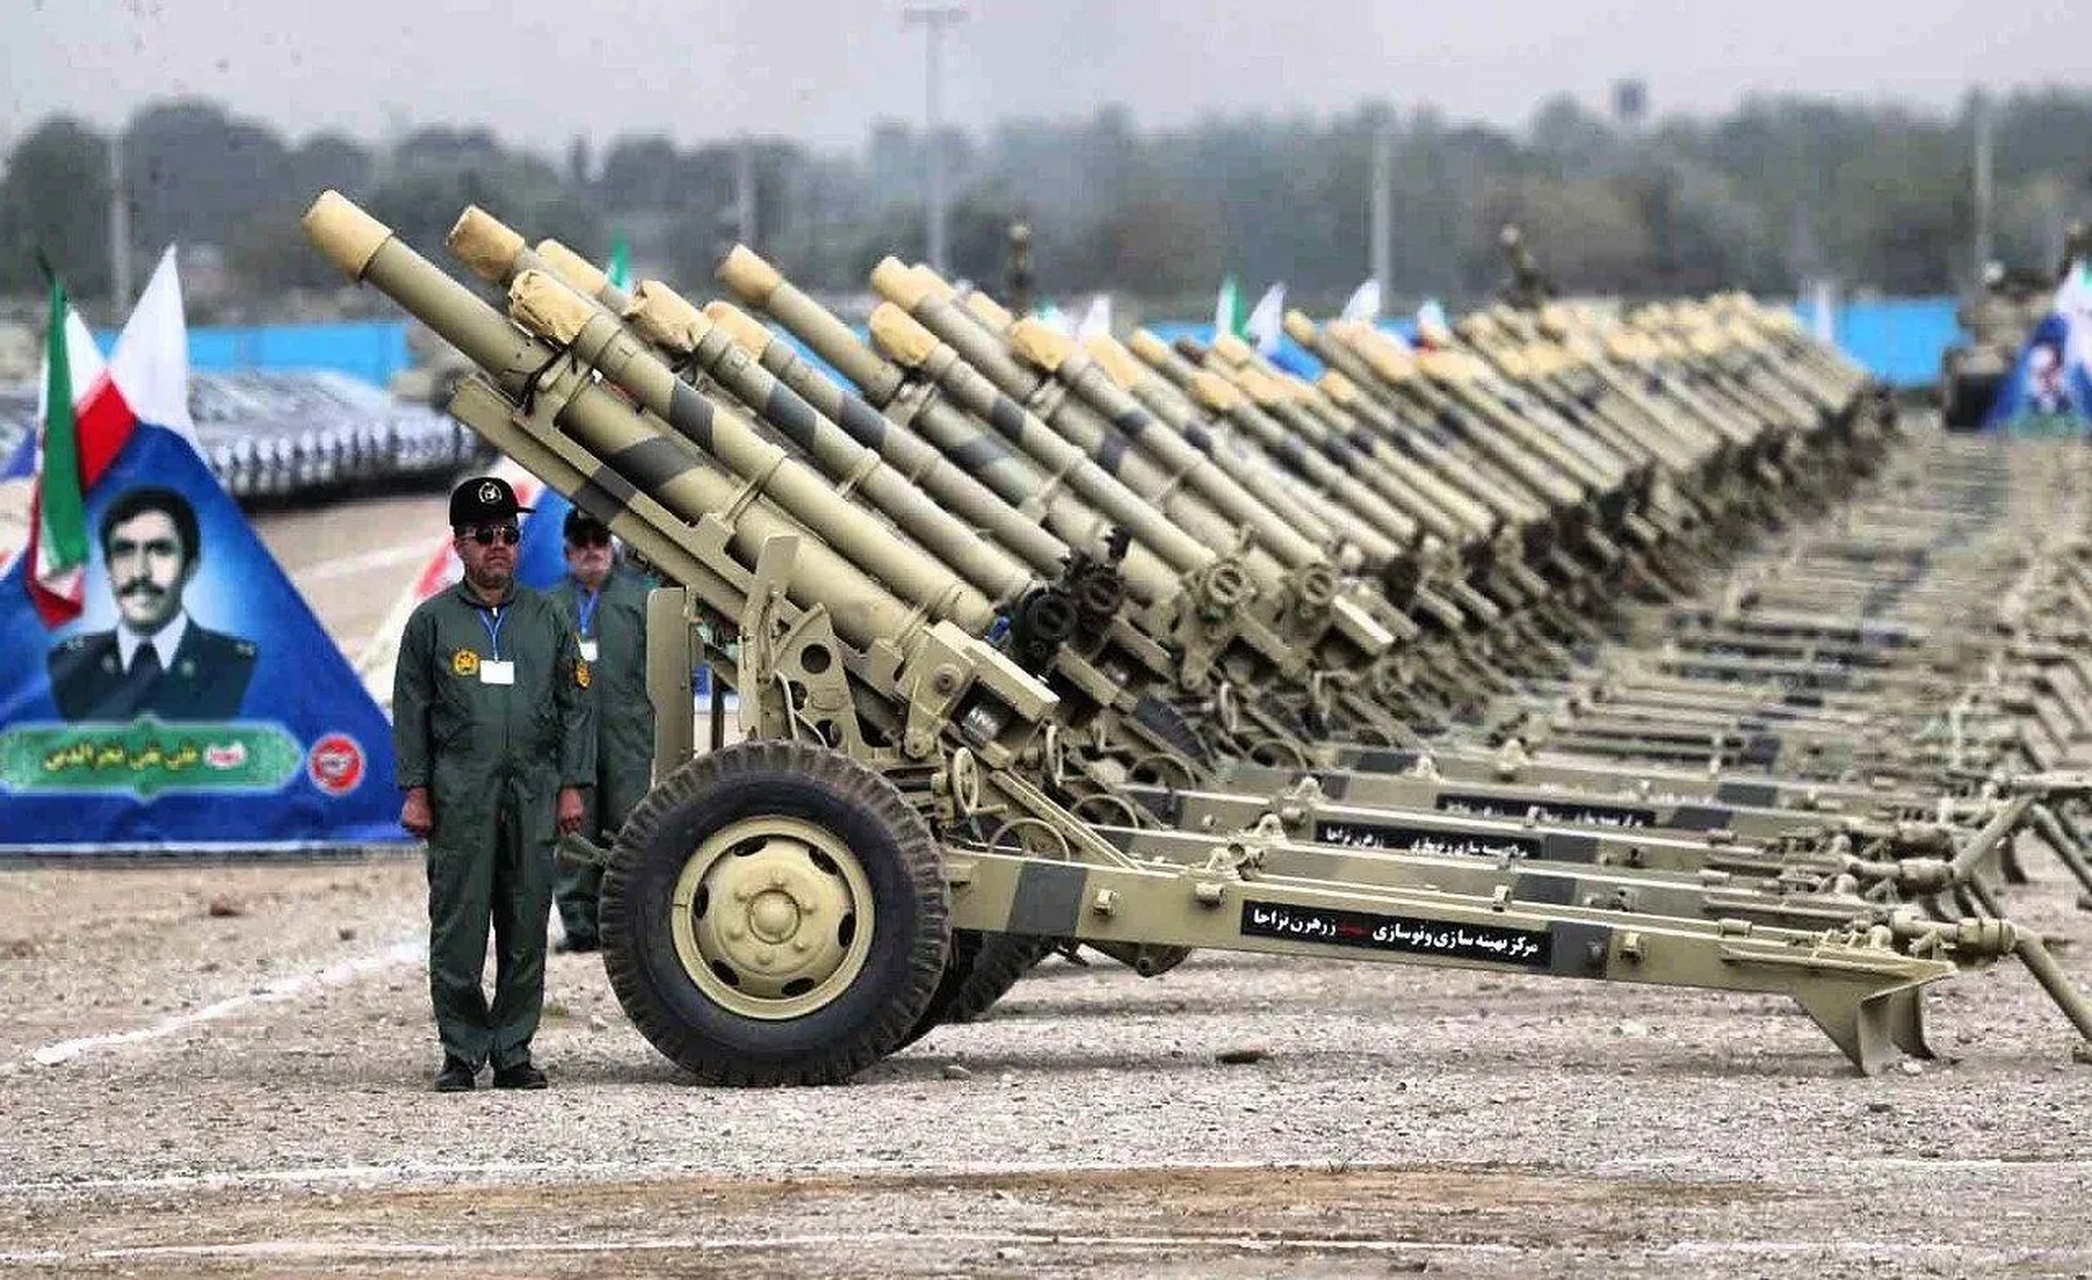 4月11日,伊朗陆军宣布新增加了1000多件武器装备,包括大量战术弹道